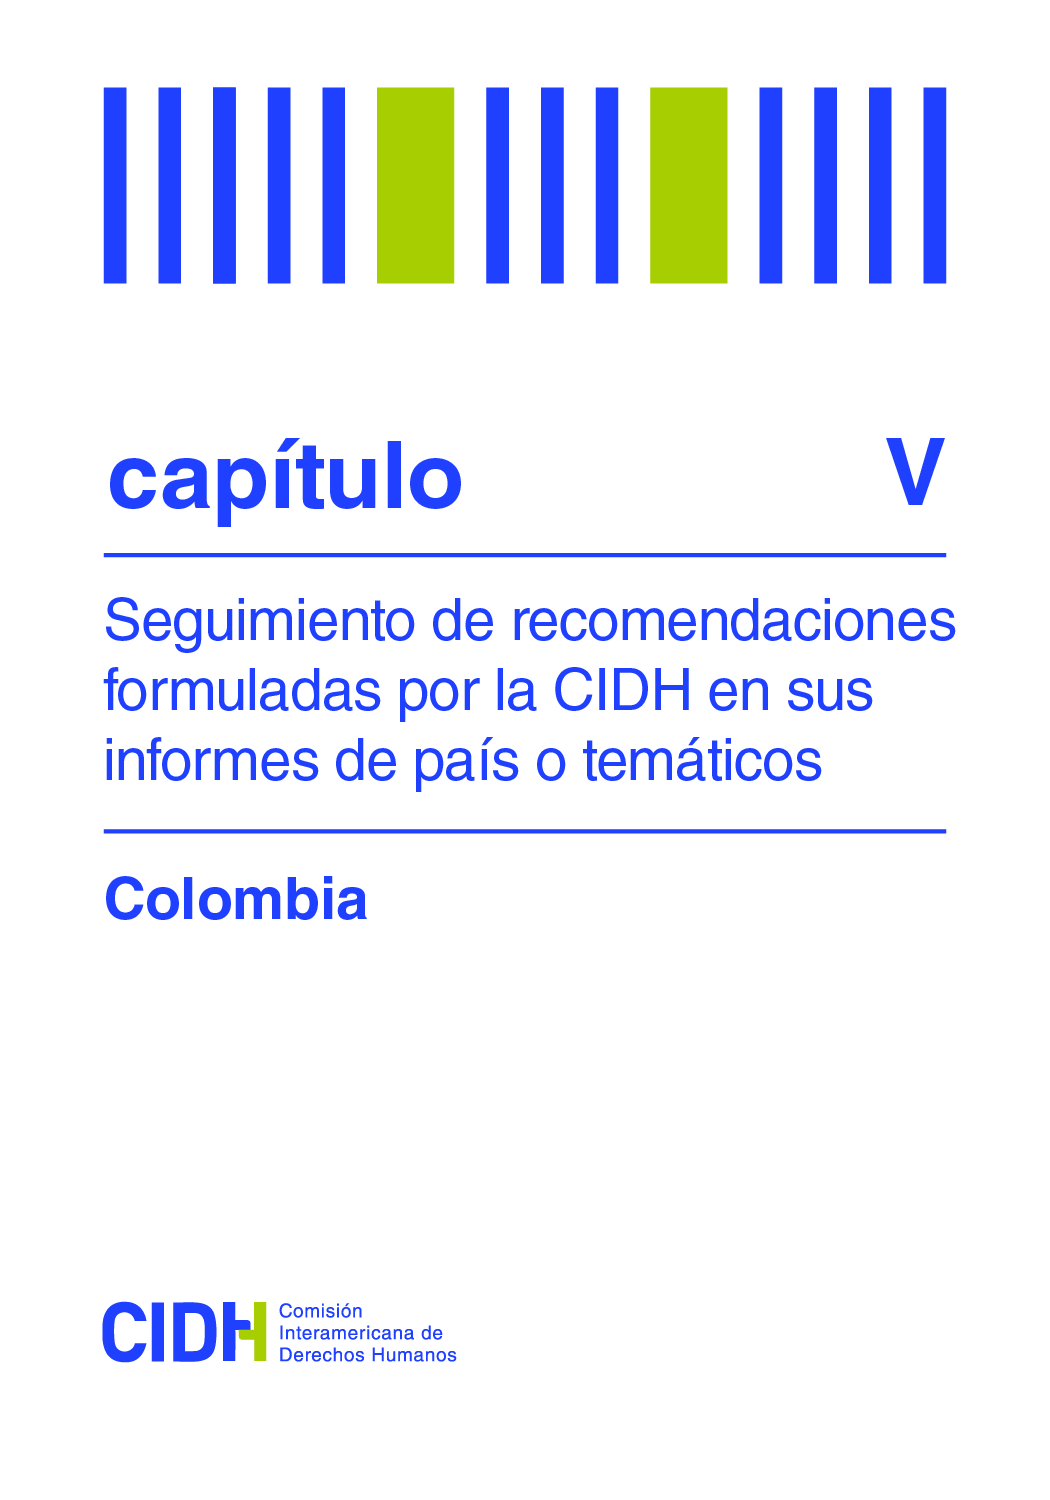 Seguimiento de recomendaciones formuladas por la CIDH en el Informe Verdad, Justicia y Reparacin: Sexto Informe sobre la situacin de Derechos Humanos en Colombia